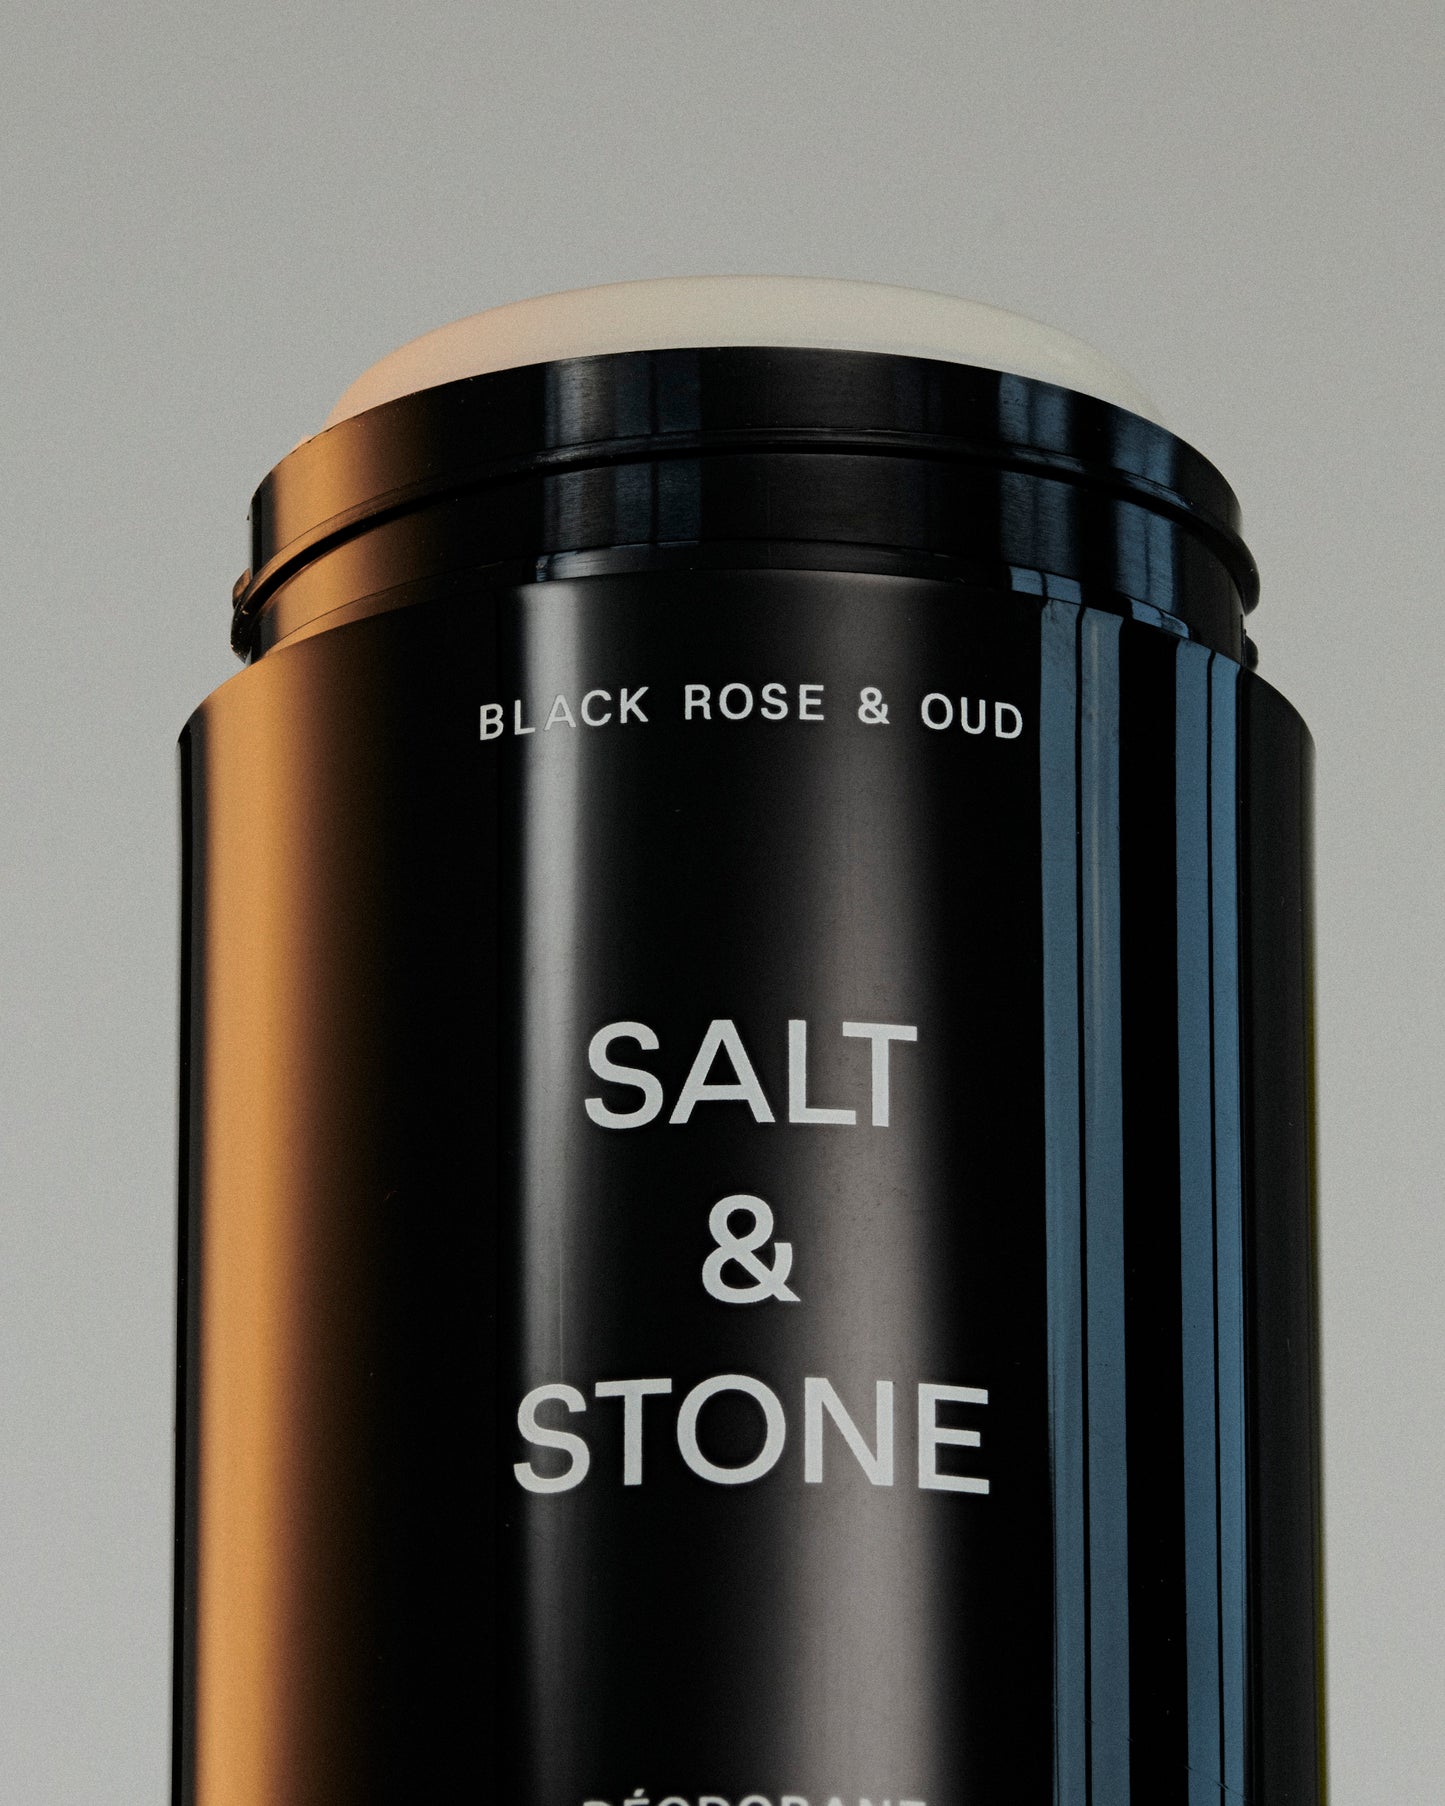 【兩件九折】Salt & Stone 黑玫瑰與薰衣草 天然體香劑 - 75g | 敏感肌適用